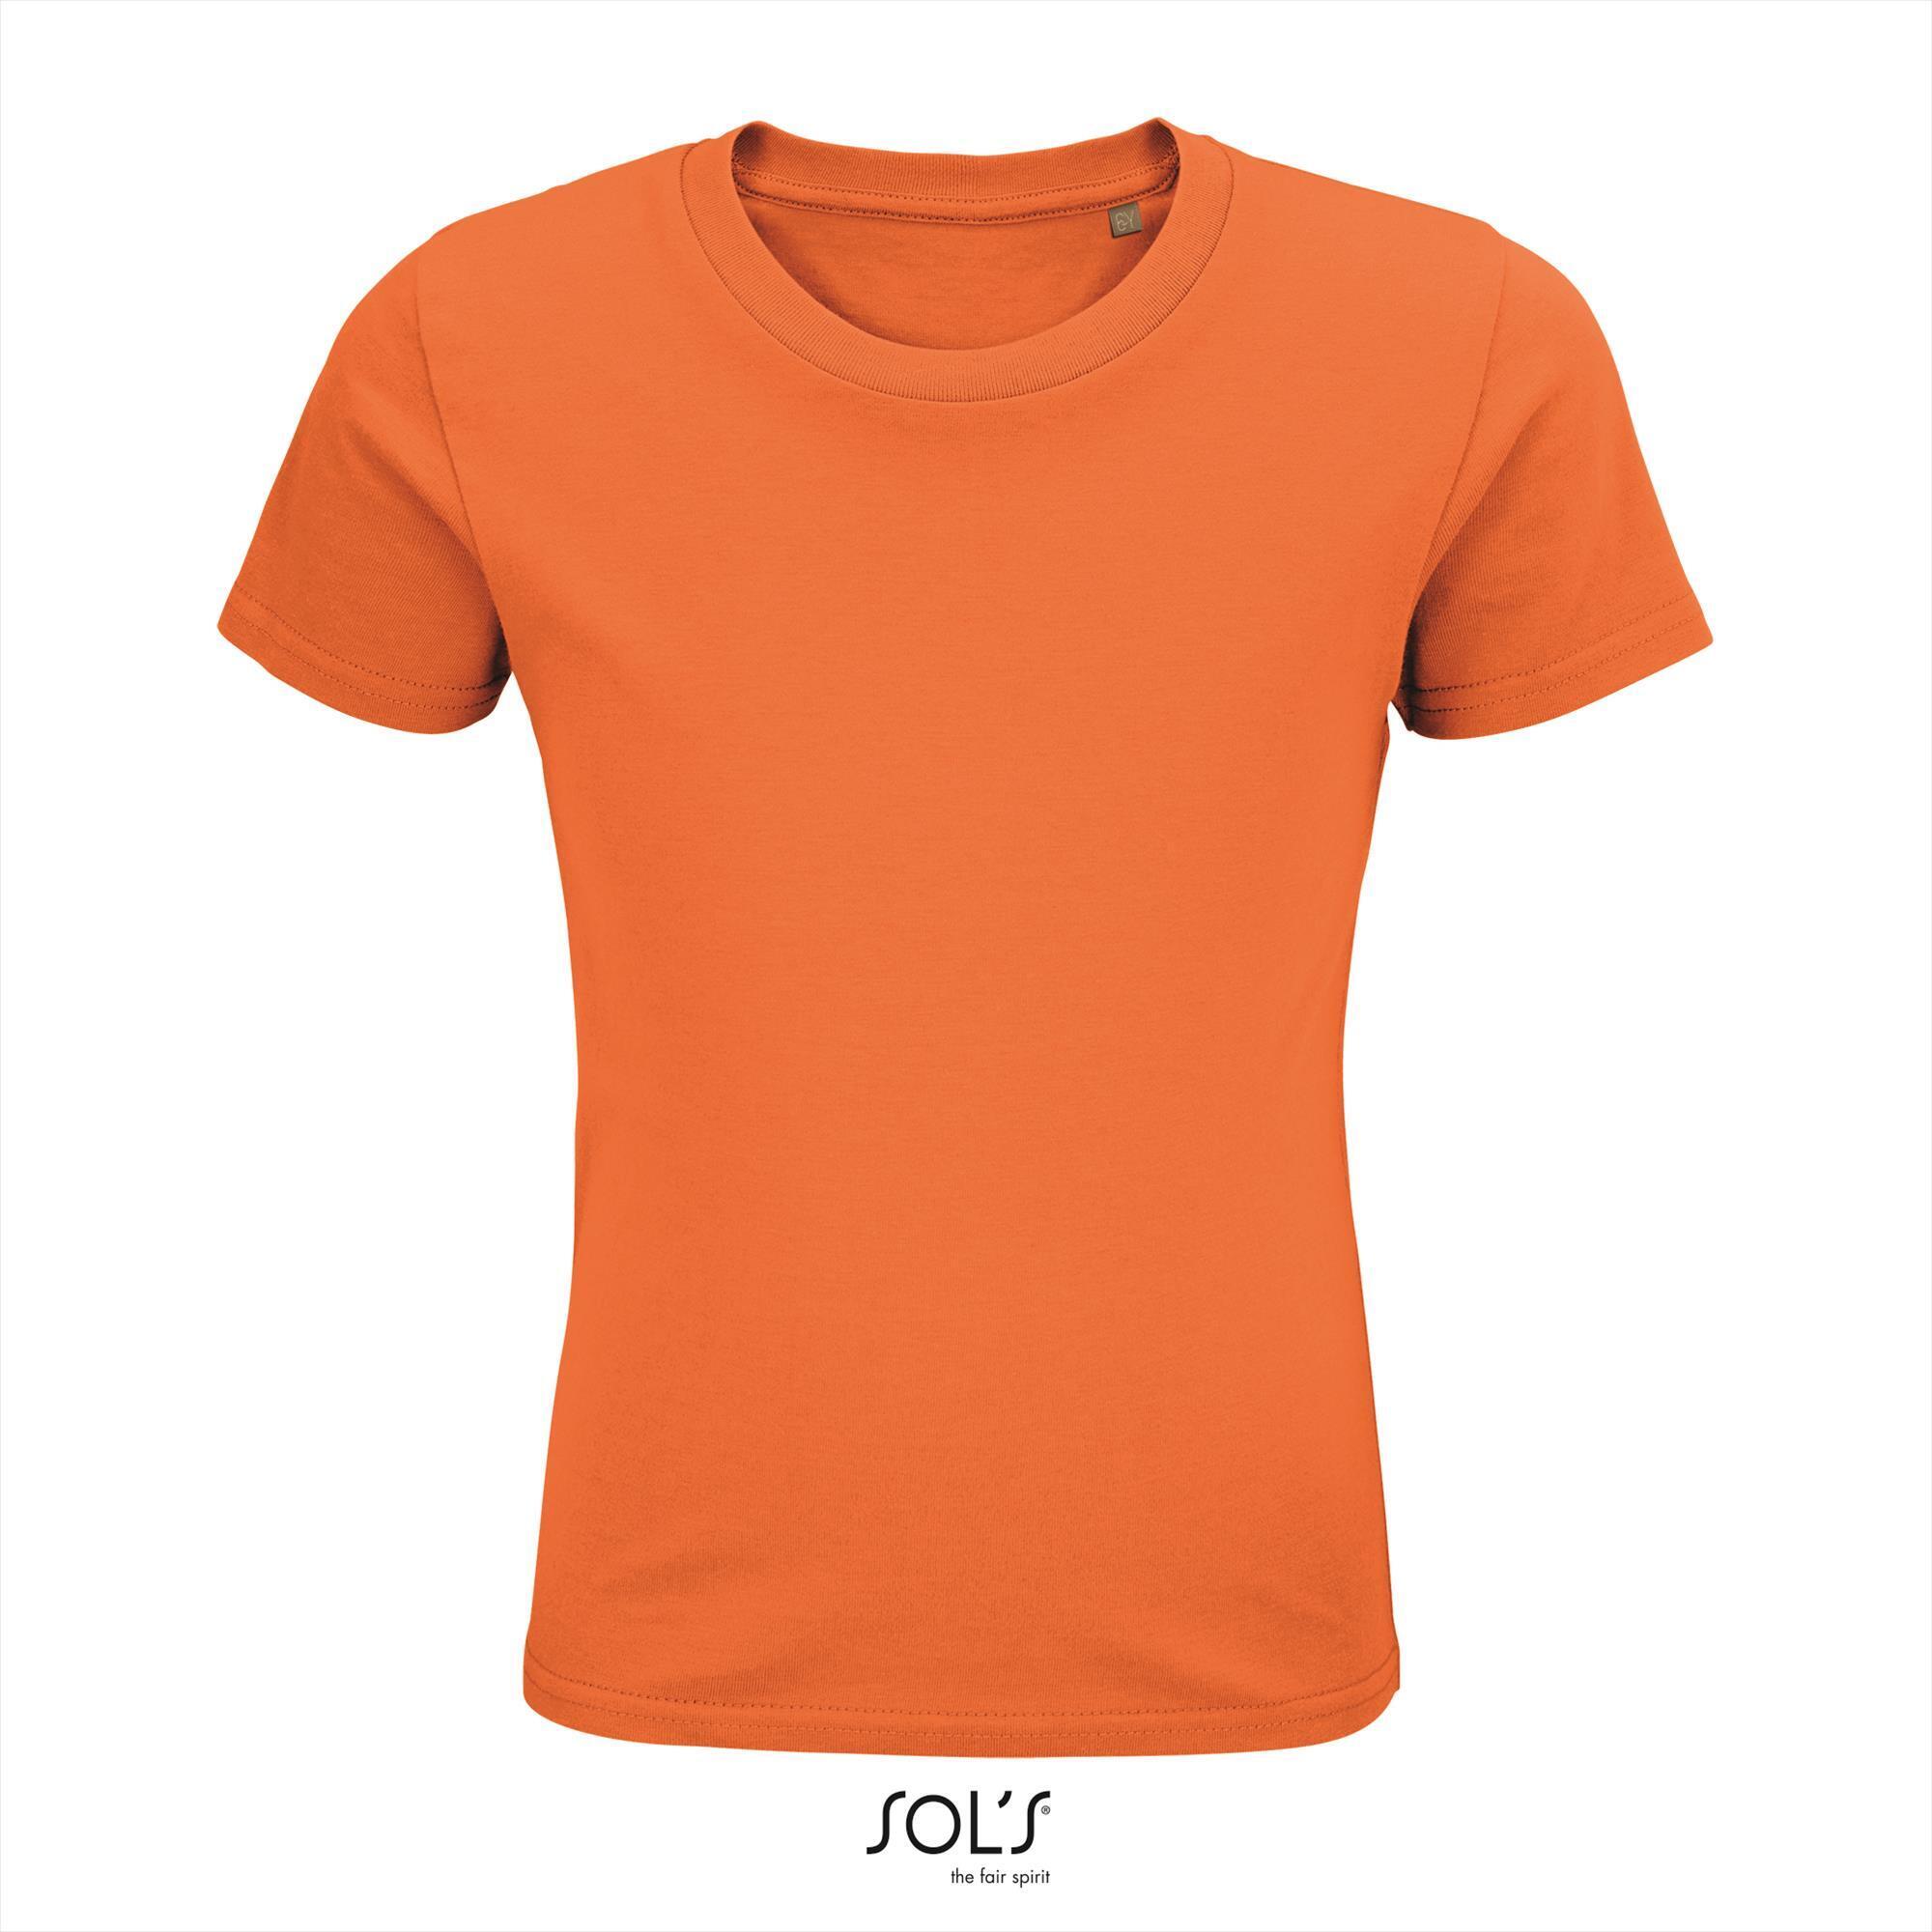 Kinder t-shirt oranje biologisch katoen ronde hals